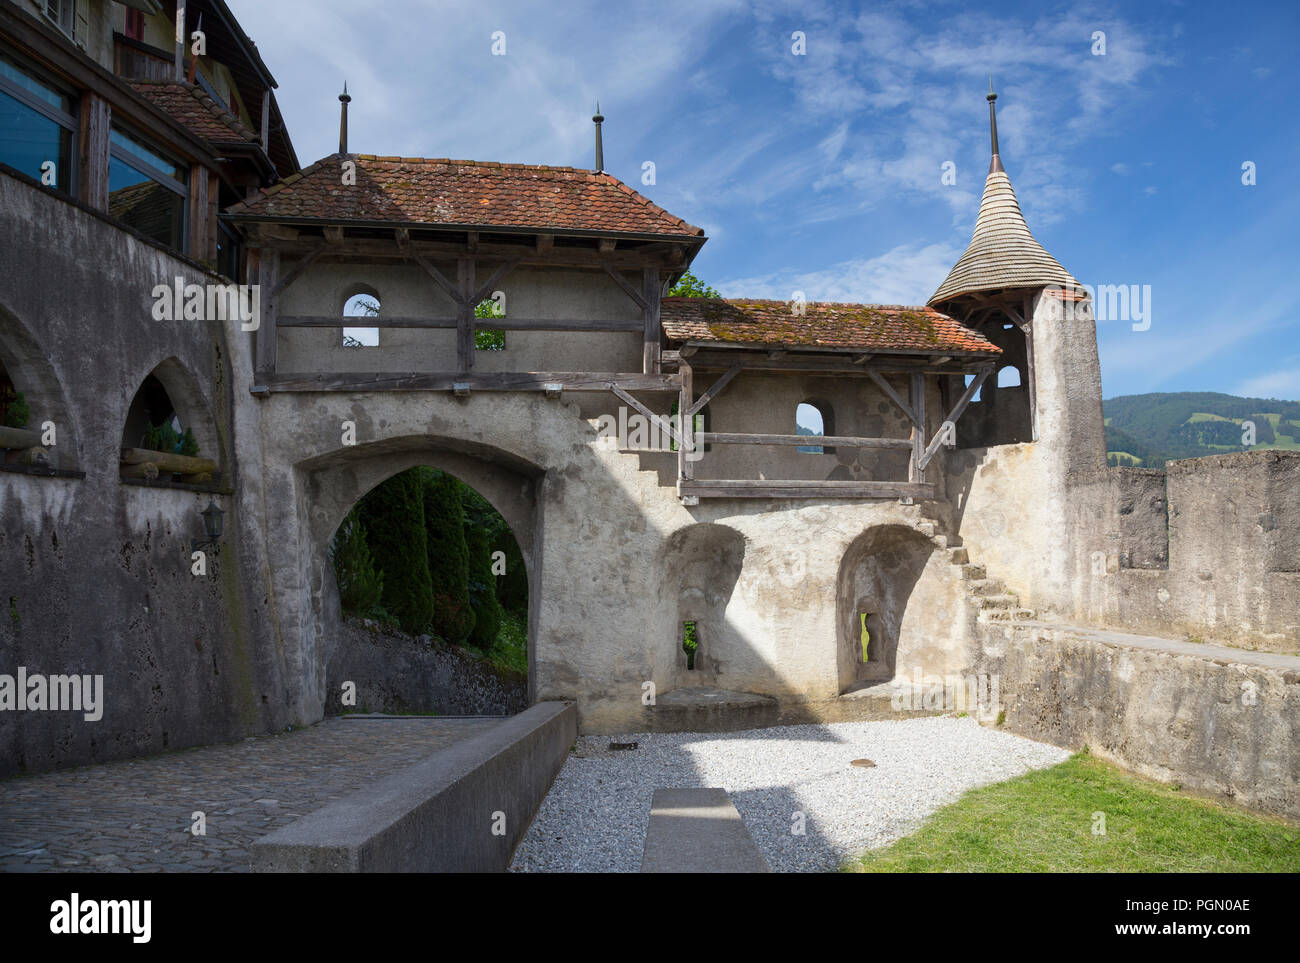 Les murs fortifiés de la ville médiévale de Gruyères, Suisse Banque D'Images